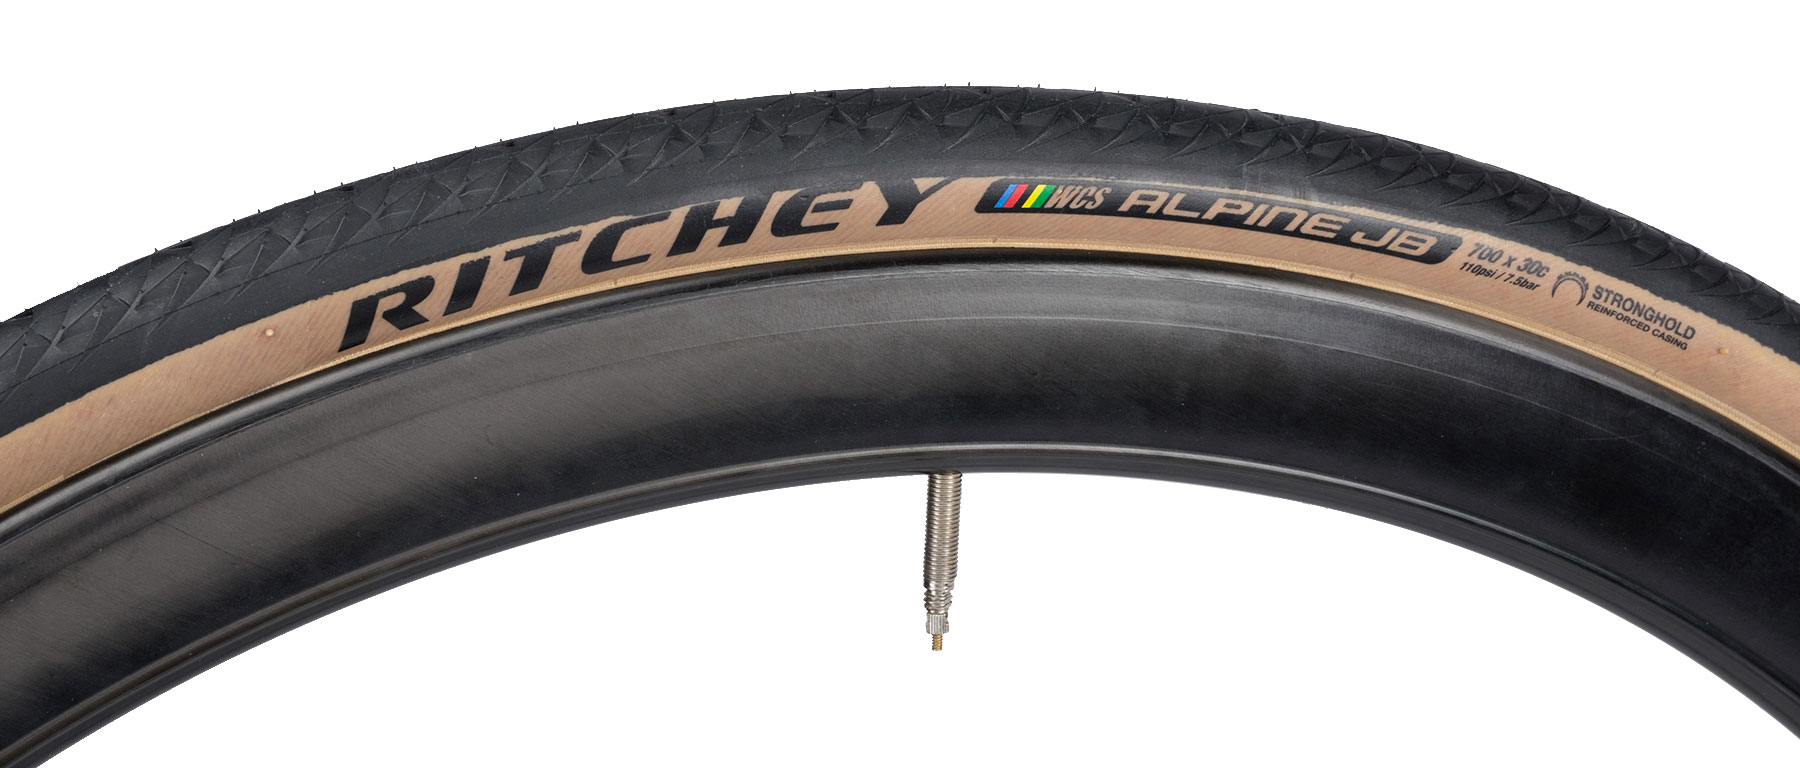 Ritchey Alpine JB WCS Gravel Tire